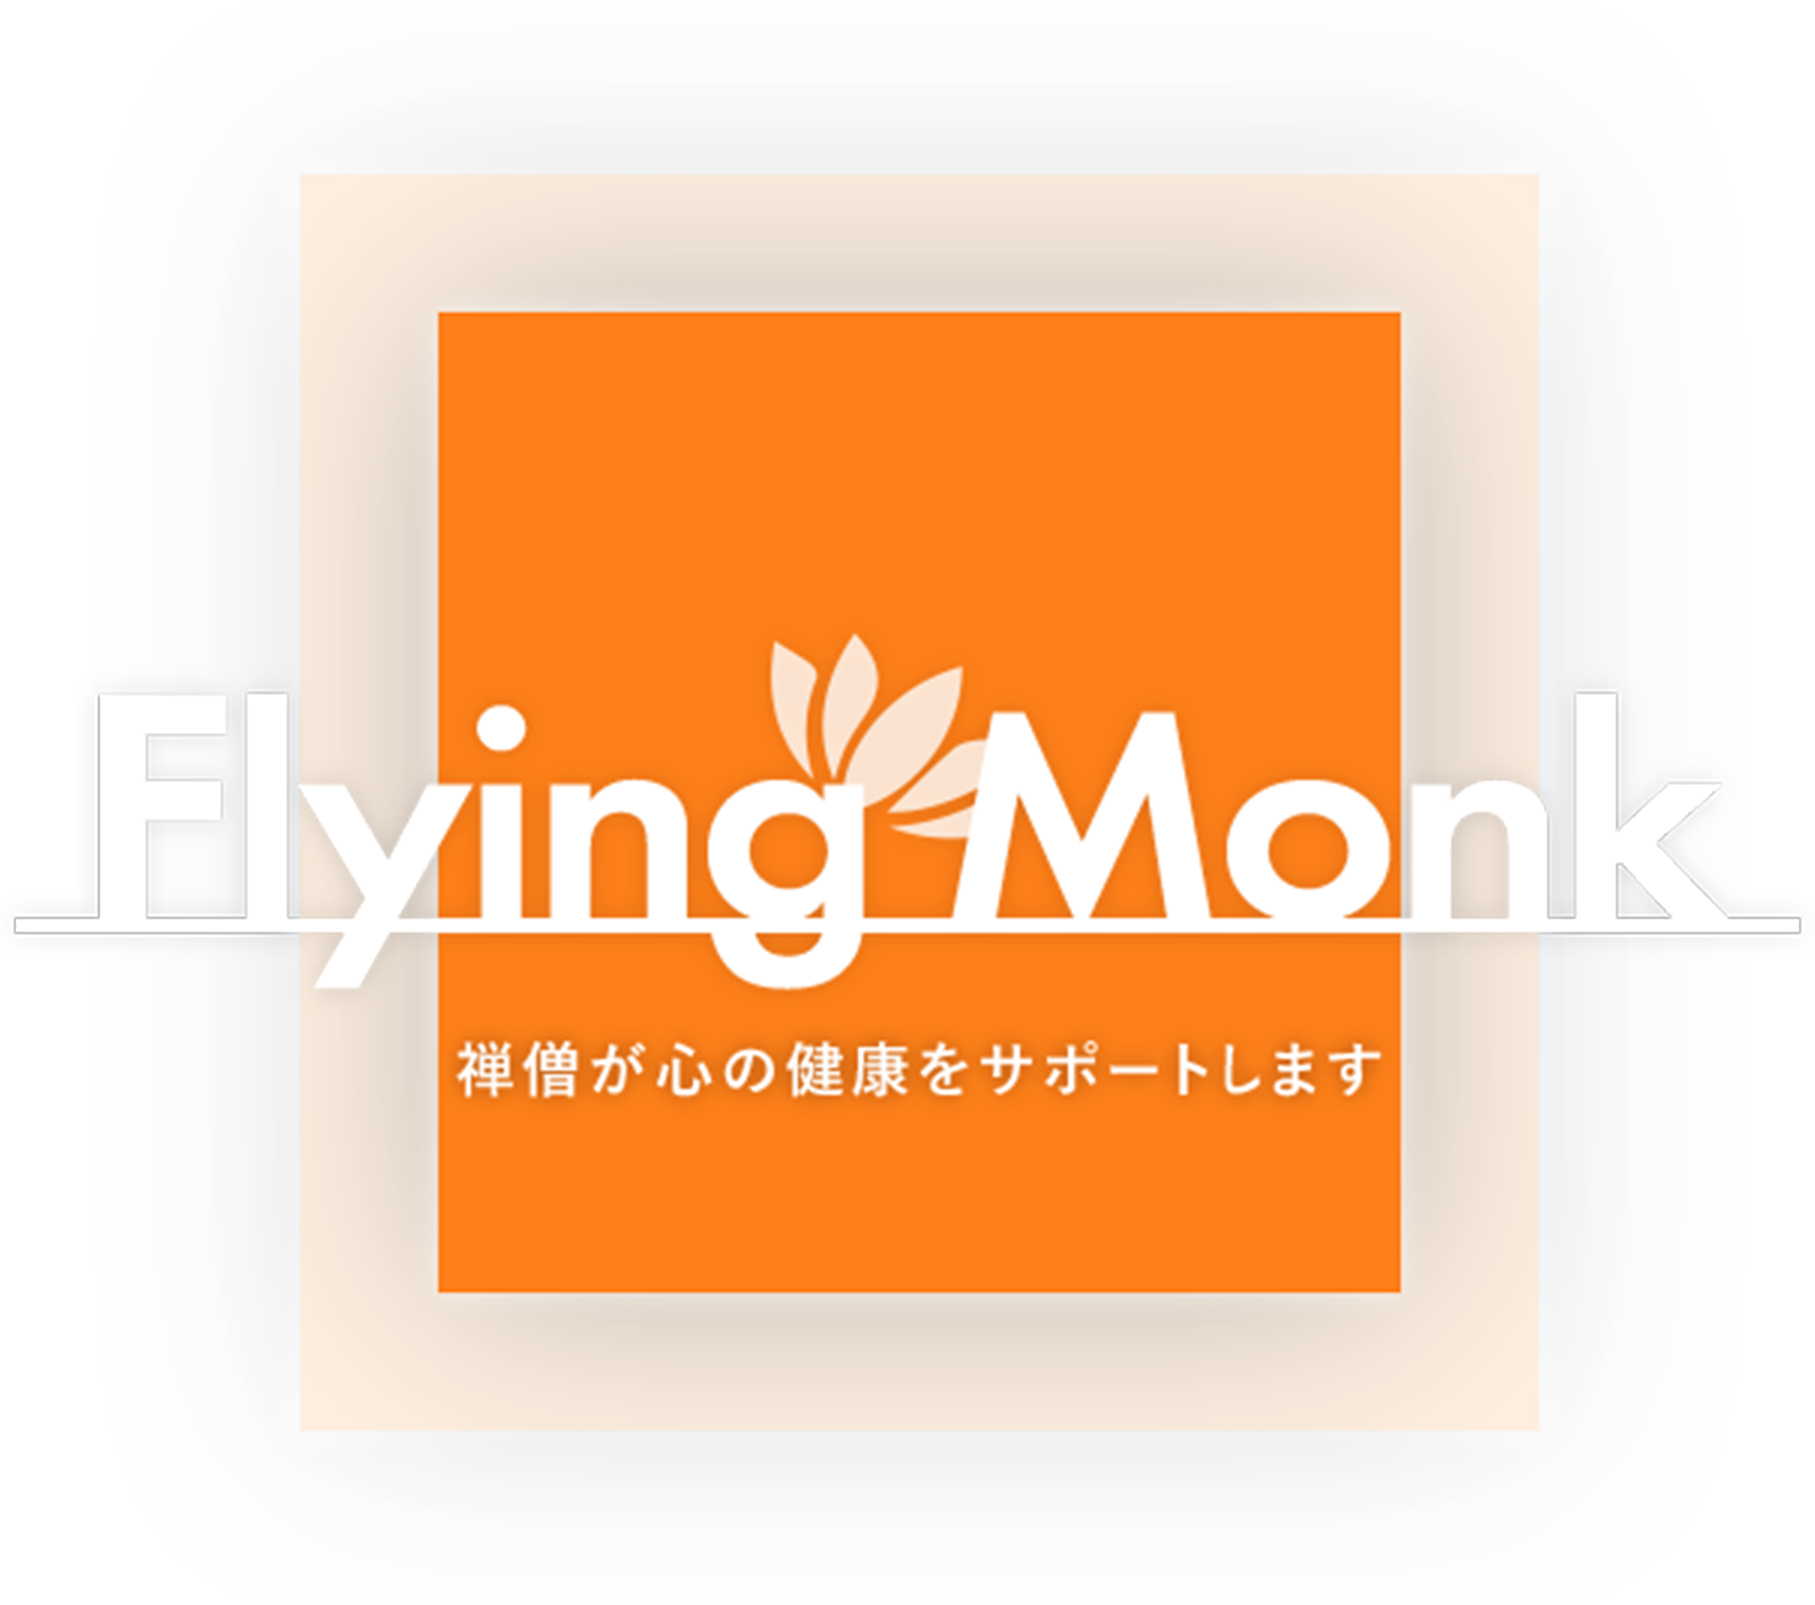 Flying Monk 禅僧が心の健康をサポートします